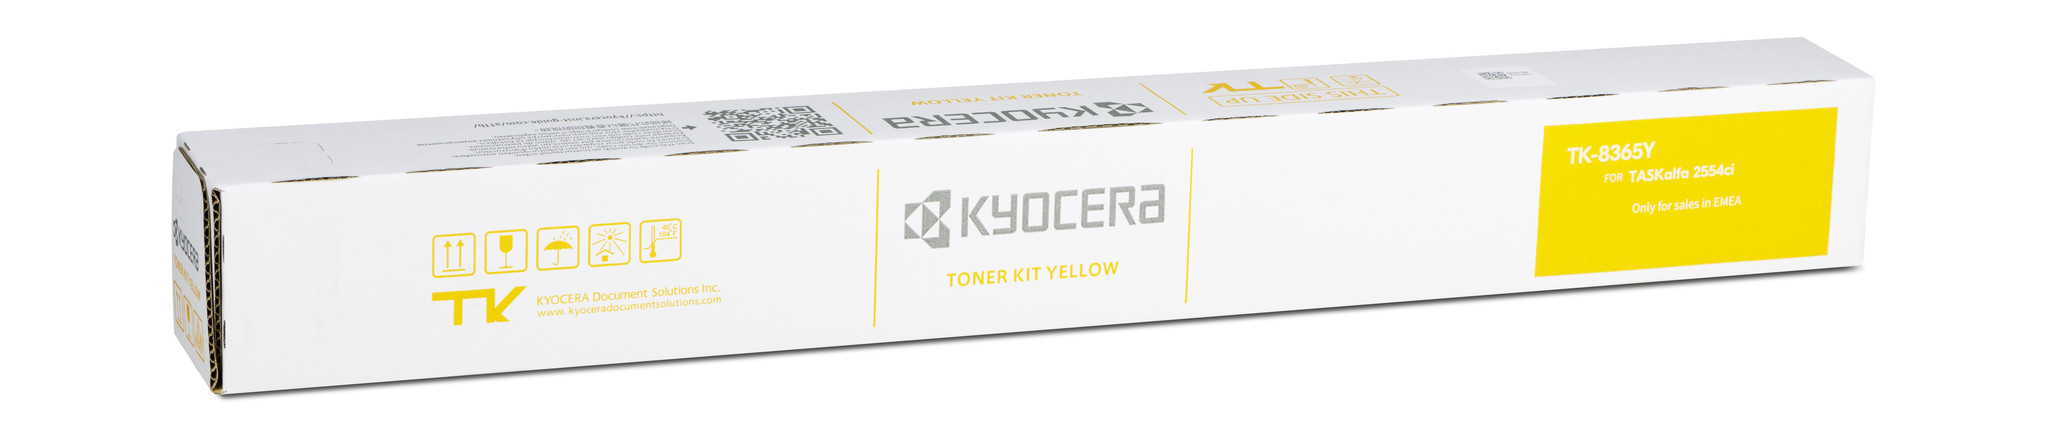 KYOCERA Toner Yellow für KYOCERA TASKalfa 2554ci